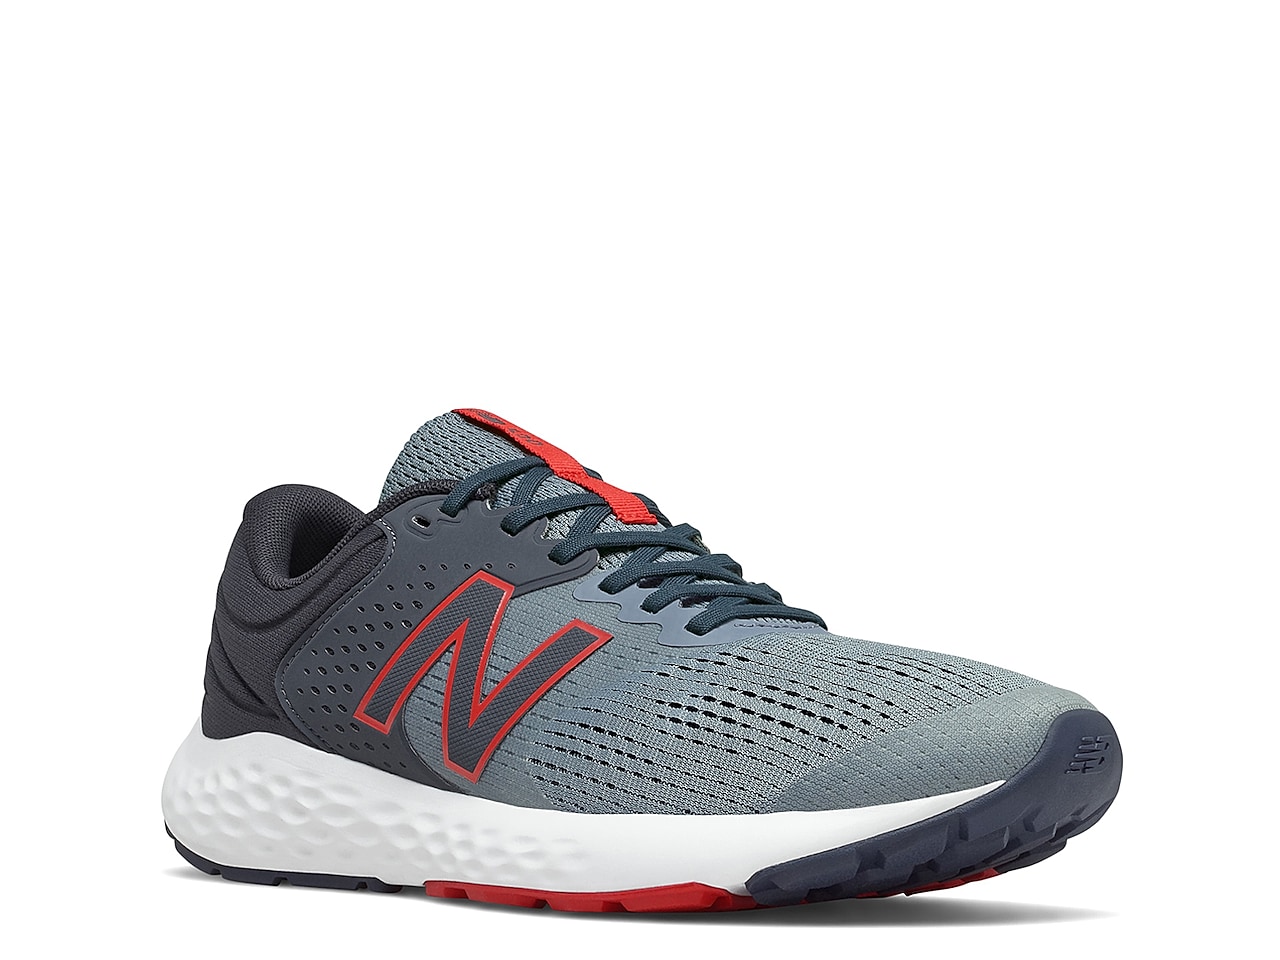 New Balance 520 v7 Running Shoe - Men's